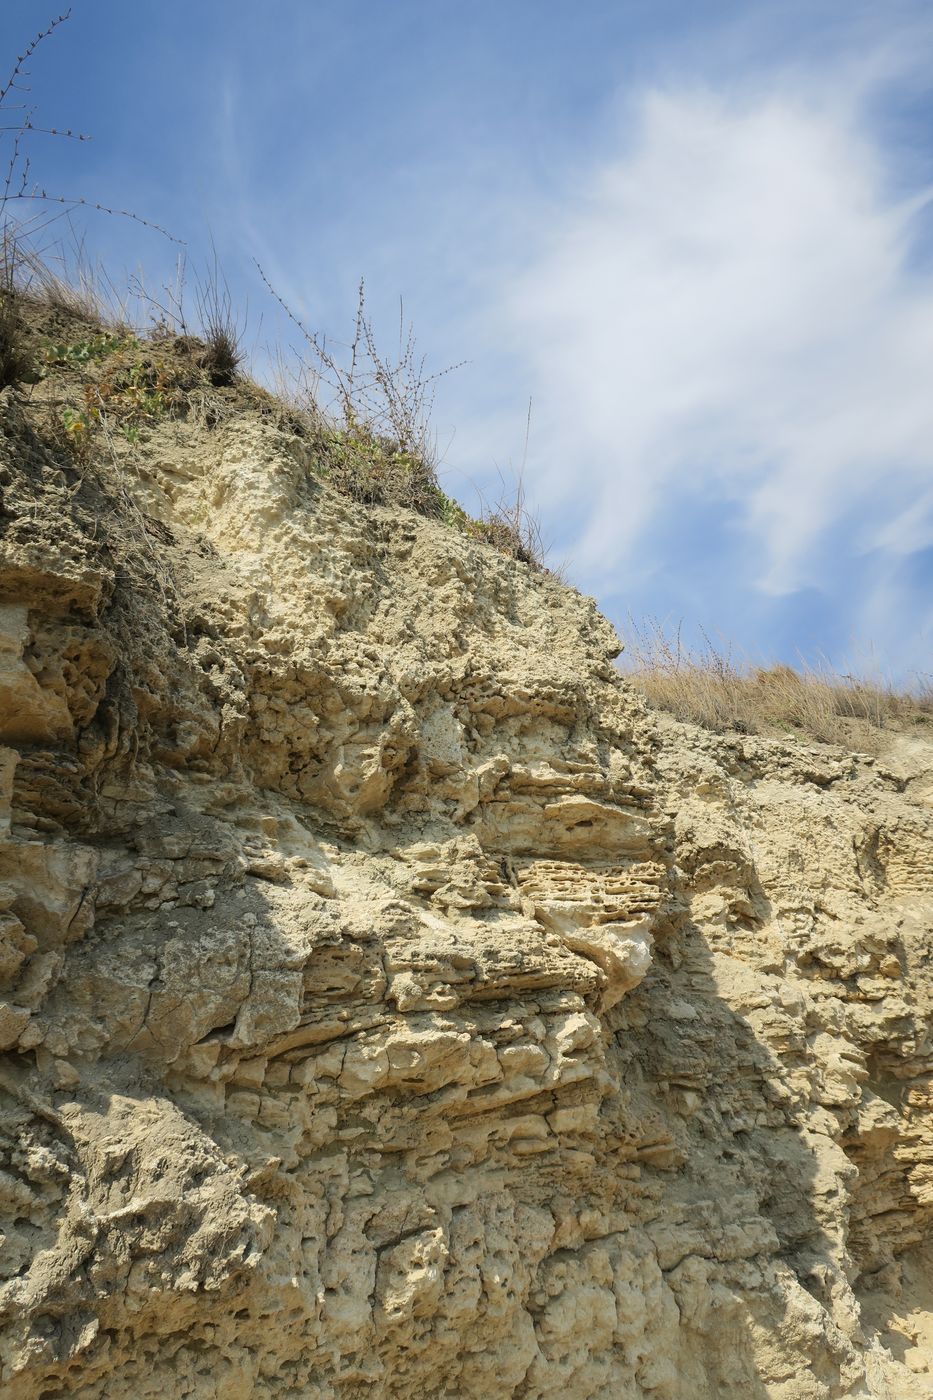 Дюны Несебра, изображение ландшафта.